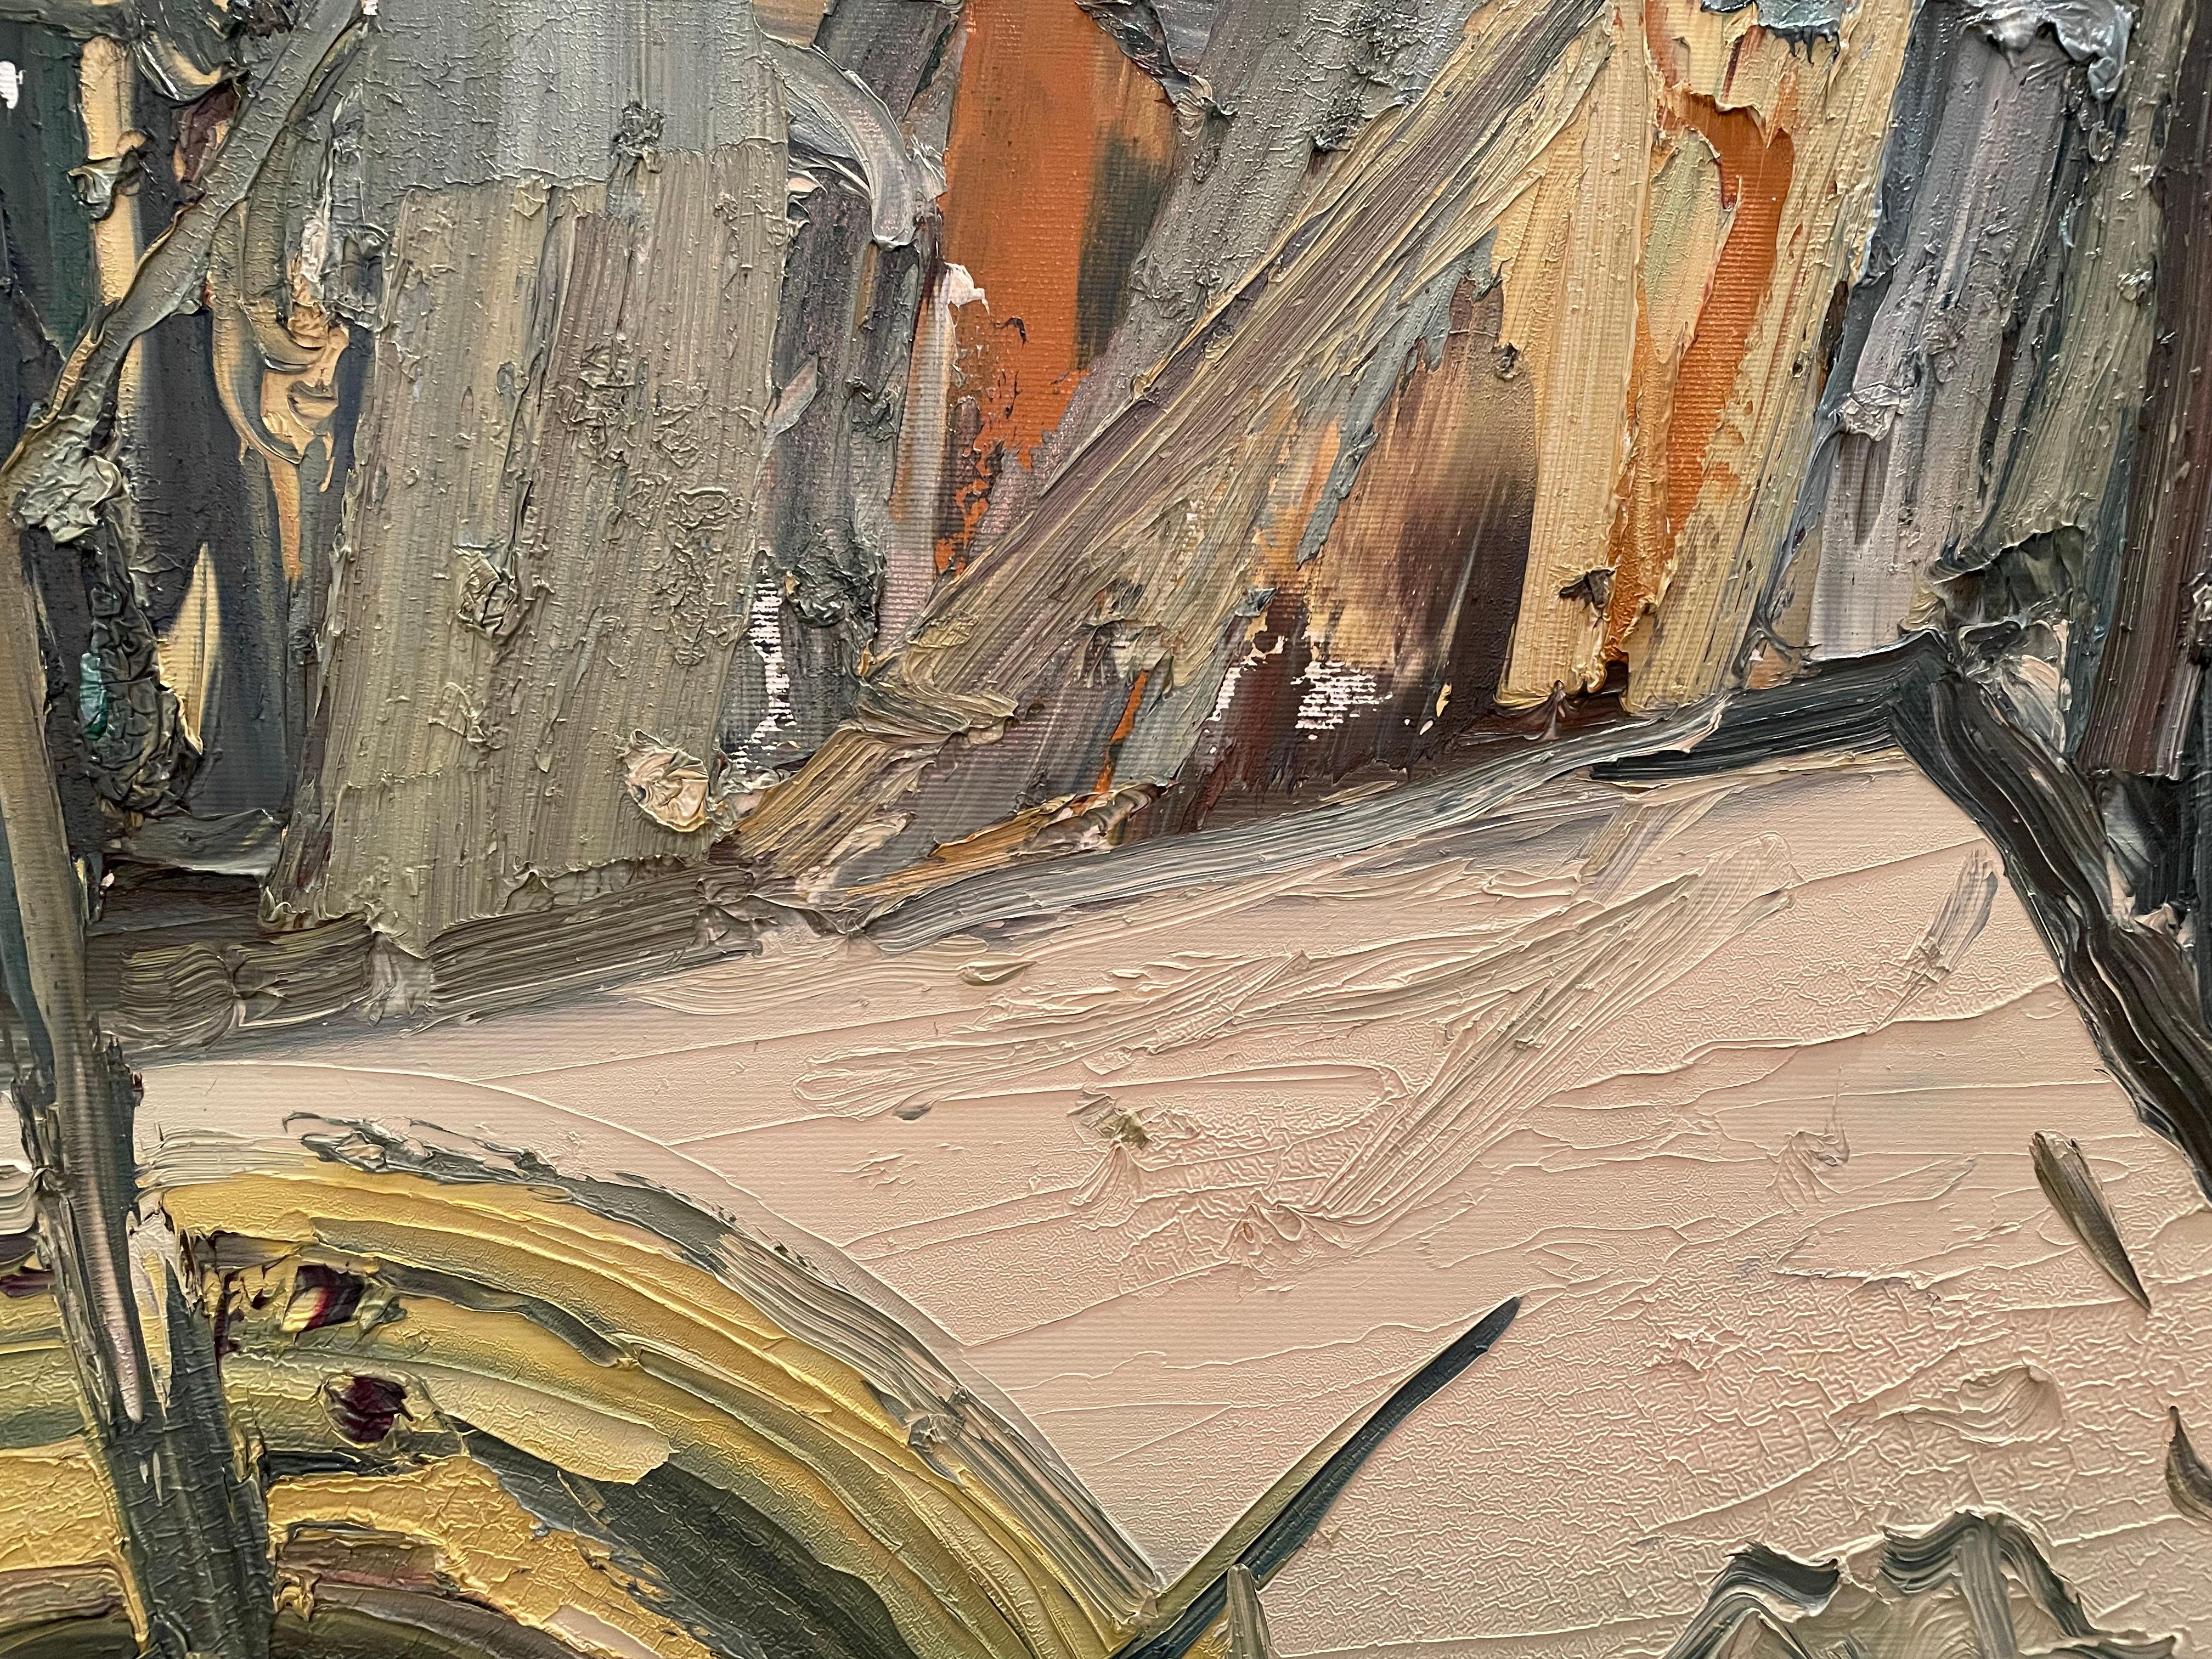 Masri, huile sur toile « Paint brushes and a palette » ( pinceaux et une palette) - Expressionniste Painting par Masri Hayssam